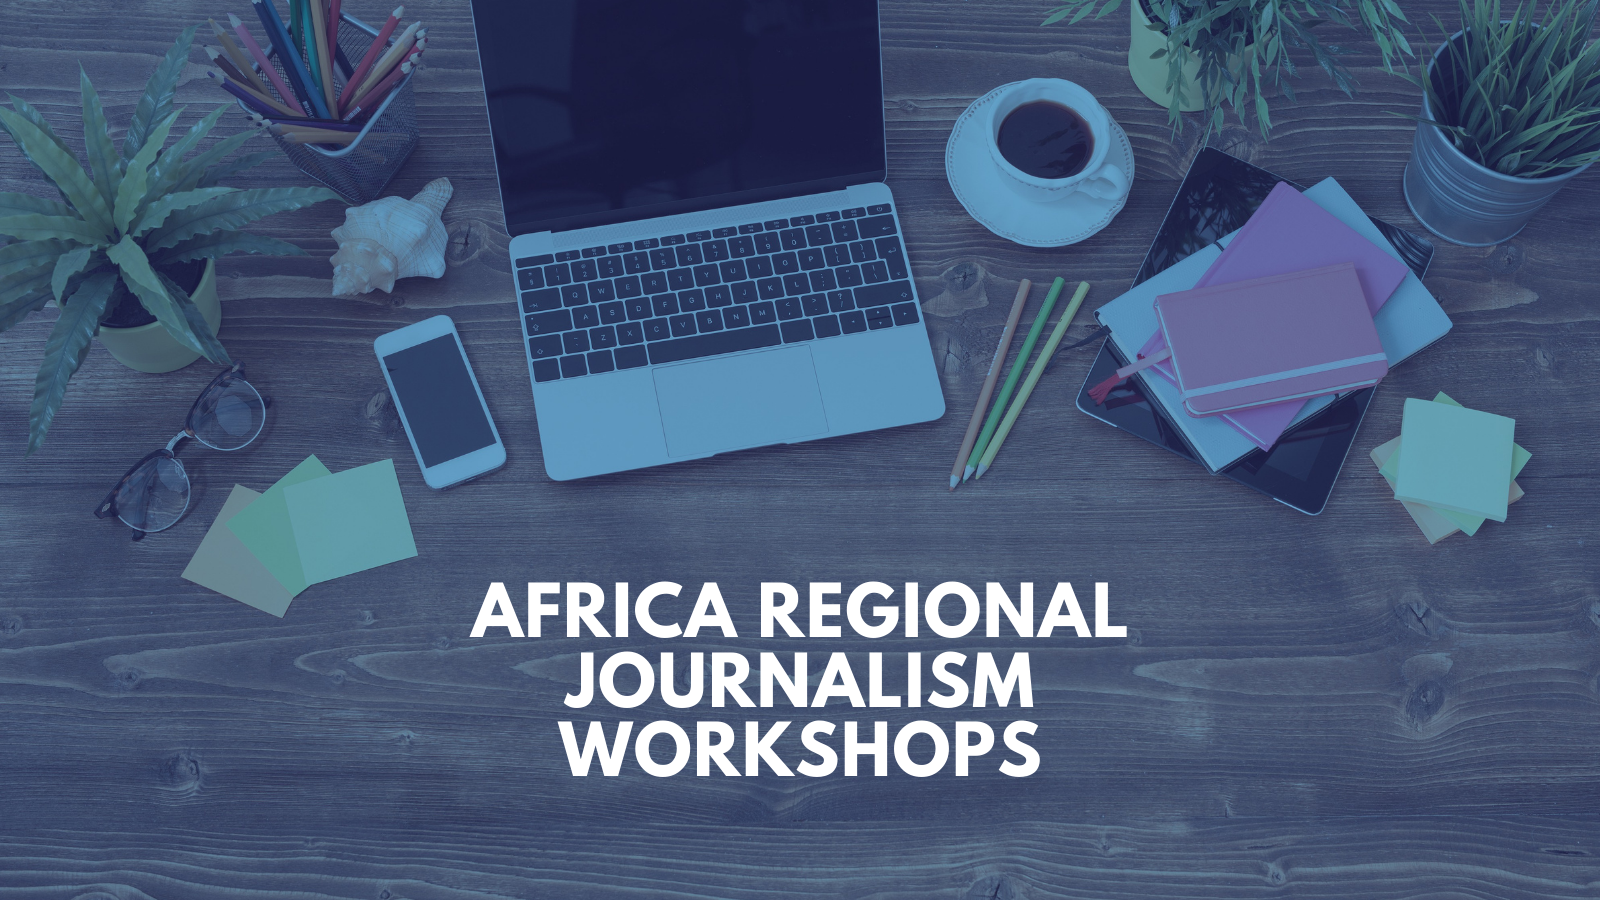 ICFJ Africa Regional Journalism Workshops 2021